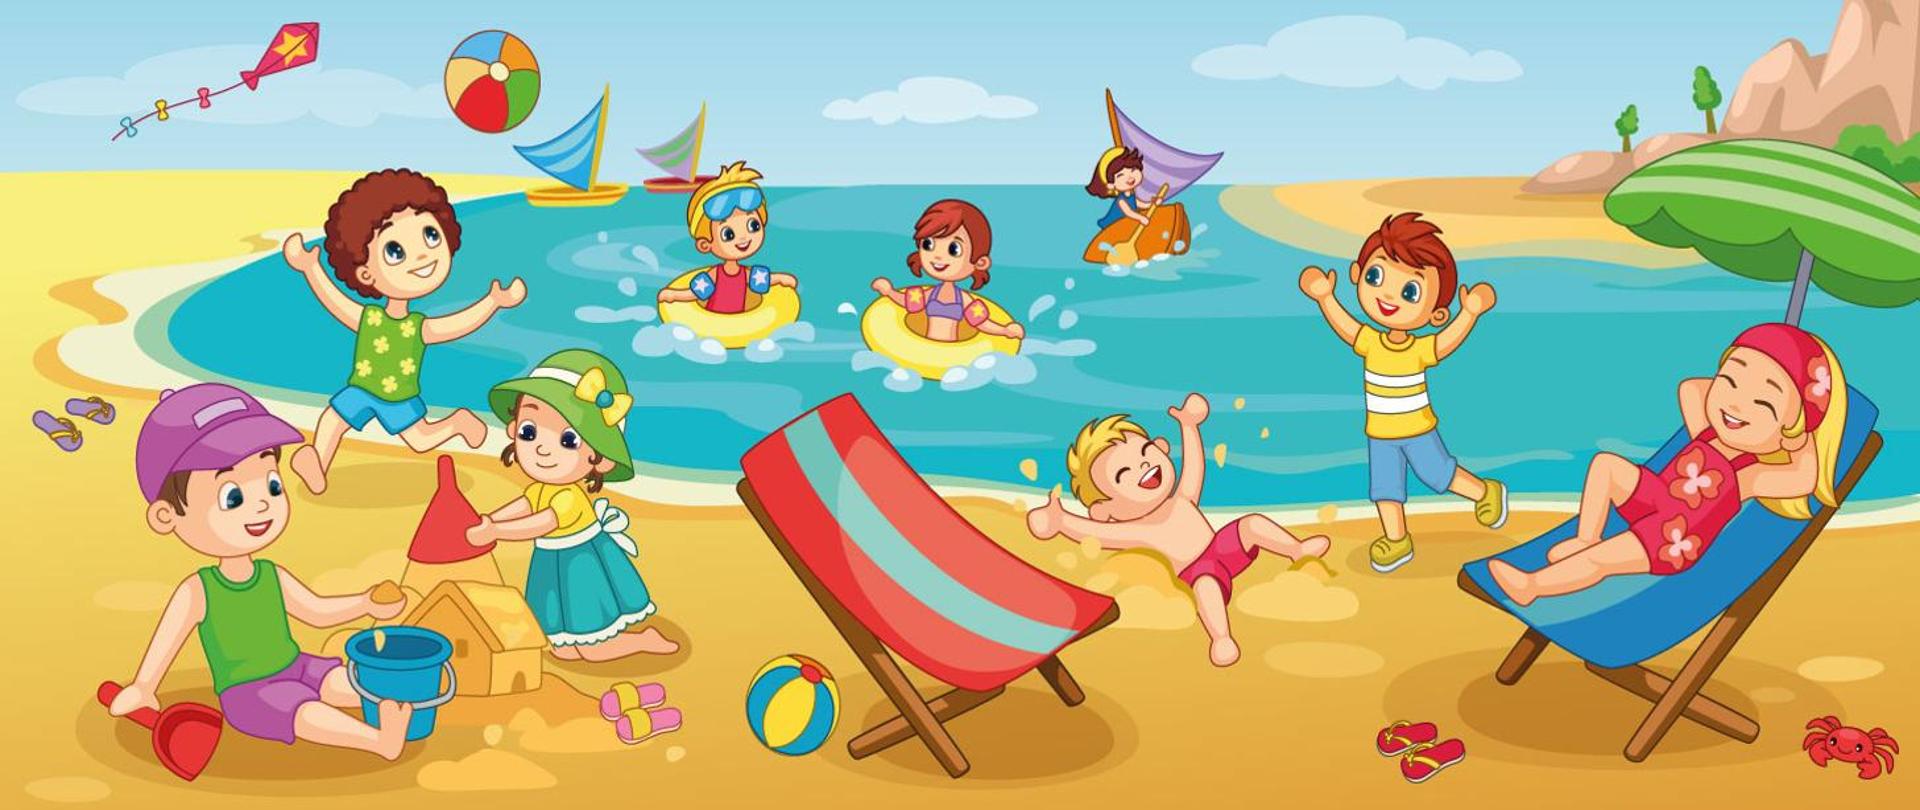 Obrazek przedstawiający dzieci bawiące się nad wodą, rysunek, dzieci w wodzie z kołami do pływania, budujące domki z piasku, leżaki, dzieci uśmiechnięte i rozbawione